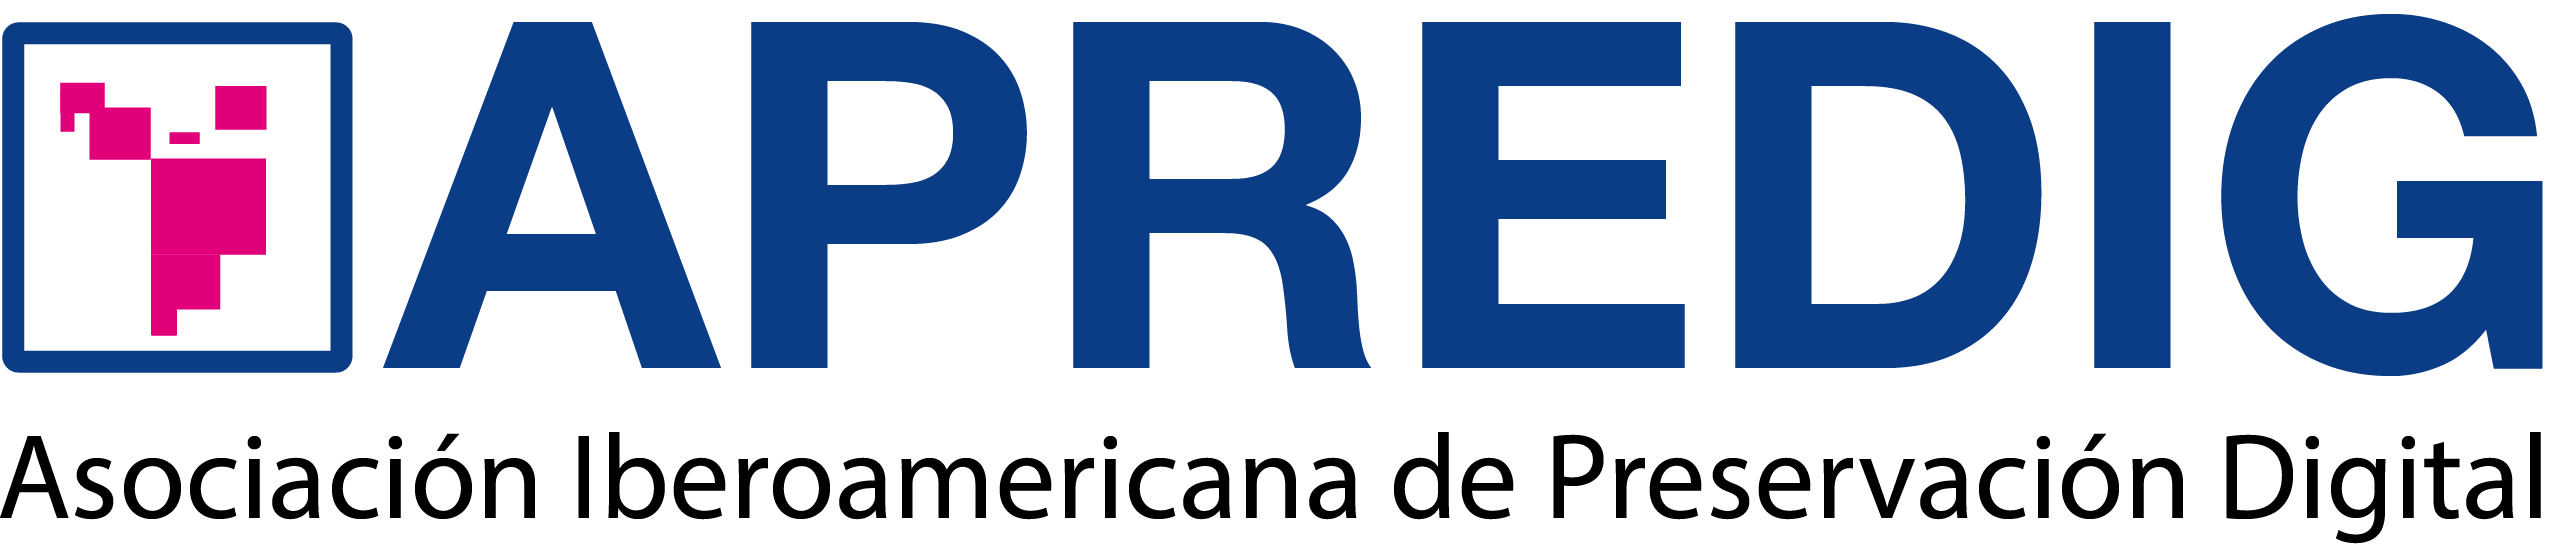 APREDIG - Asociación Iberoamericana de Preservación Digital logo